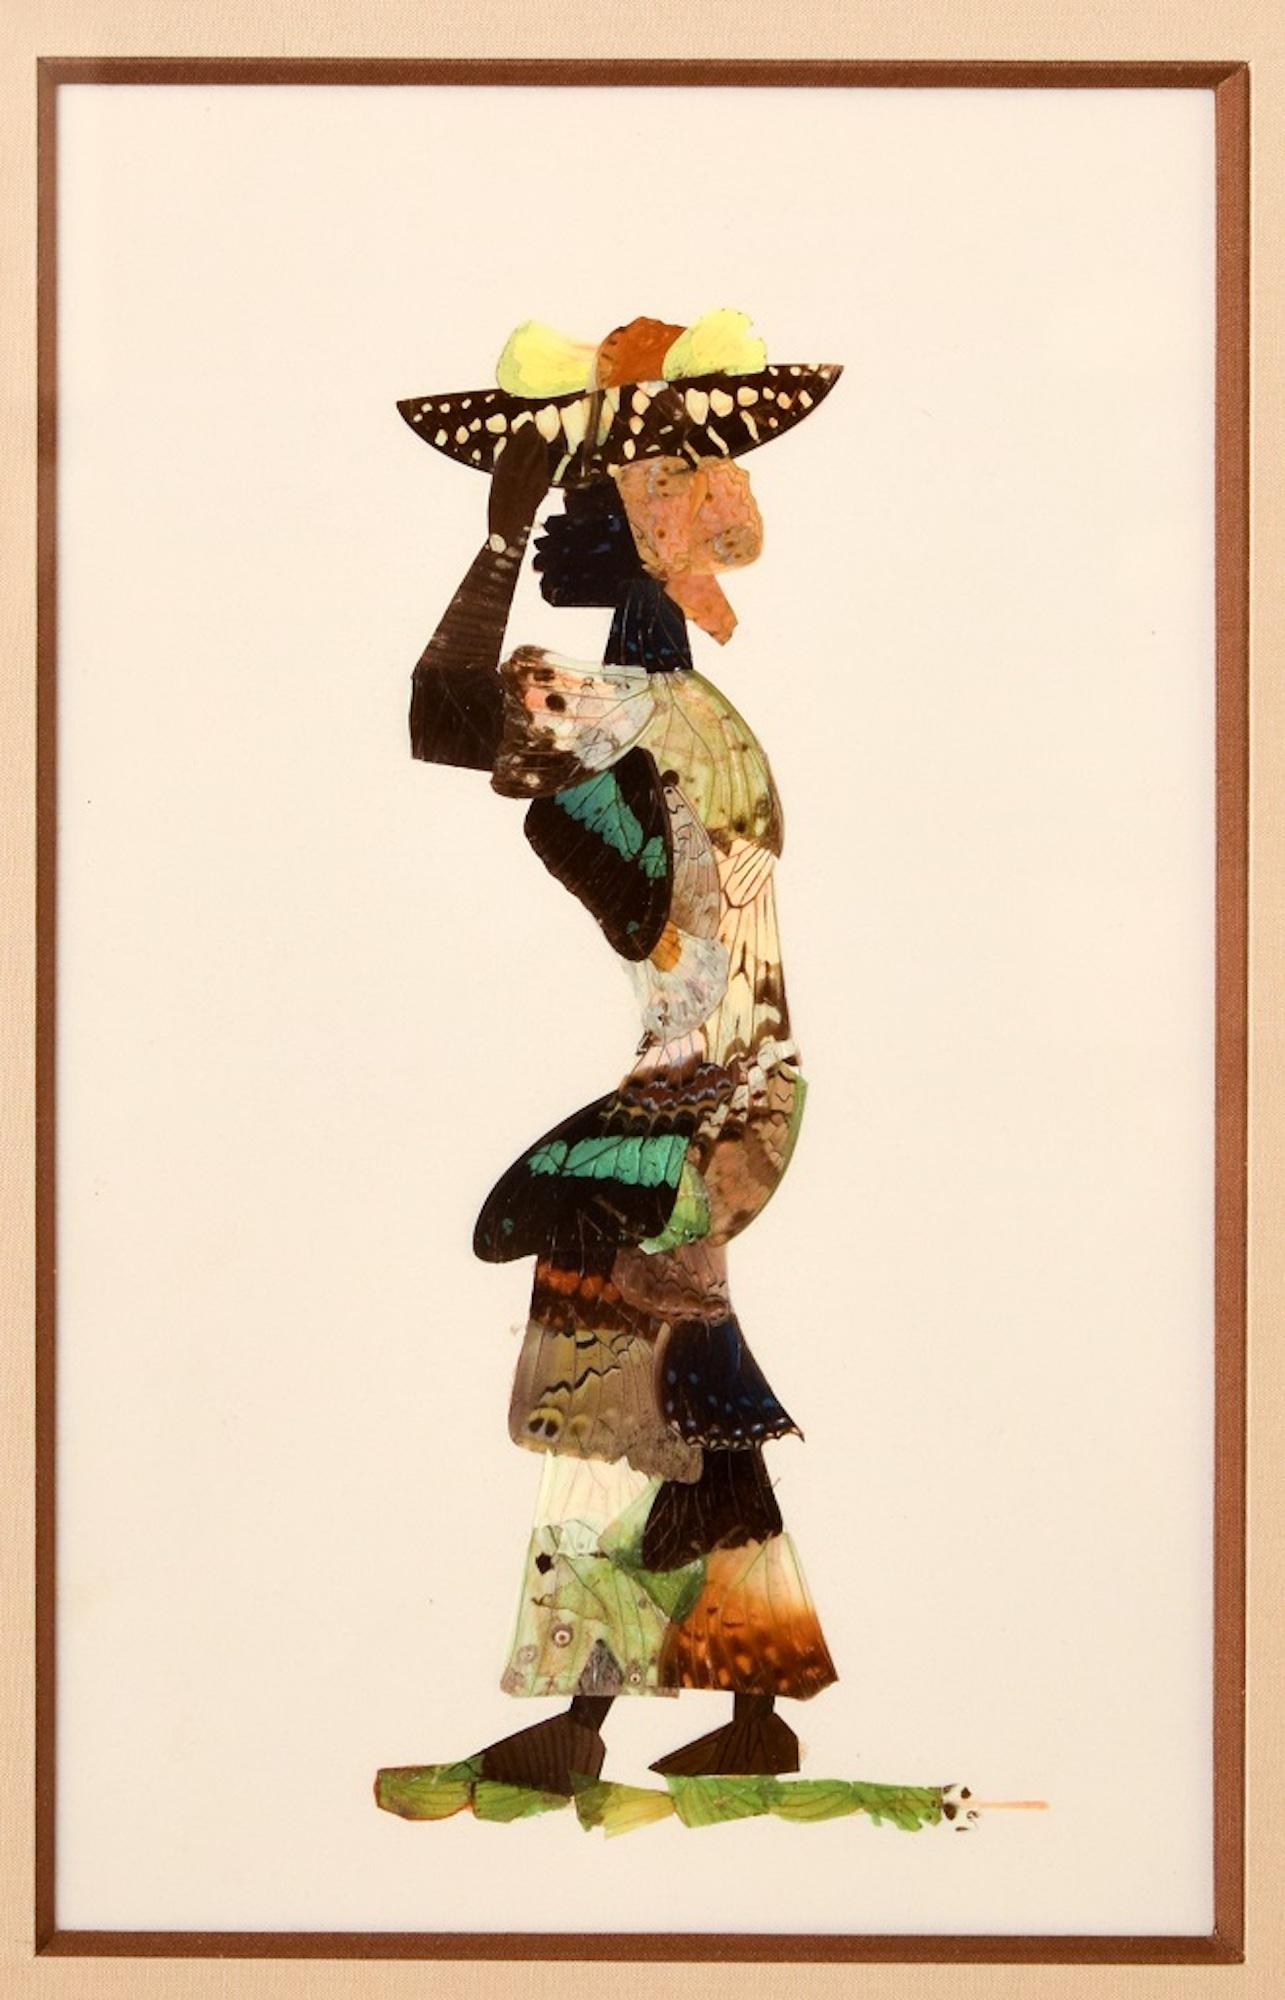 Afrikanische Schmetterlingsfrau – Vintage-Collage mit echten Schmetterlingen – 1950er Jahre – Mixed Media Art von Unknown